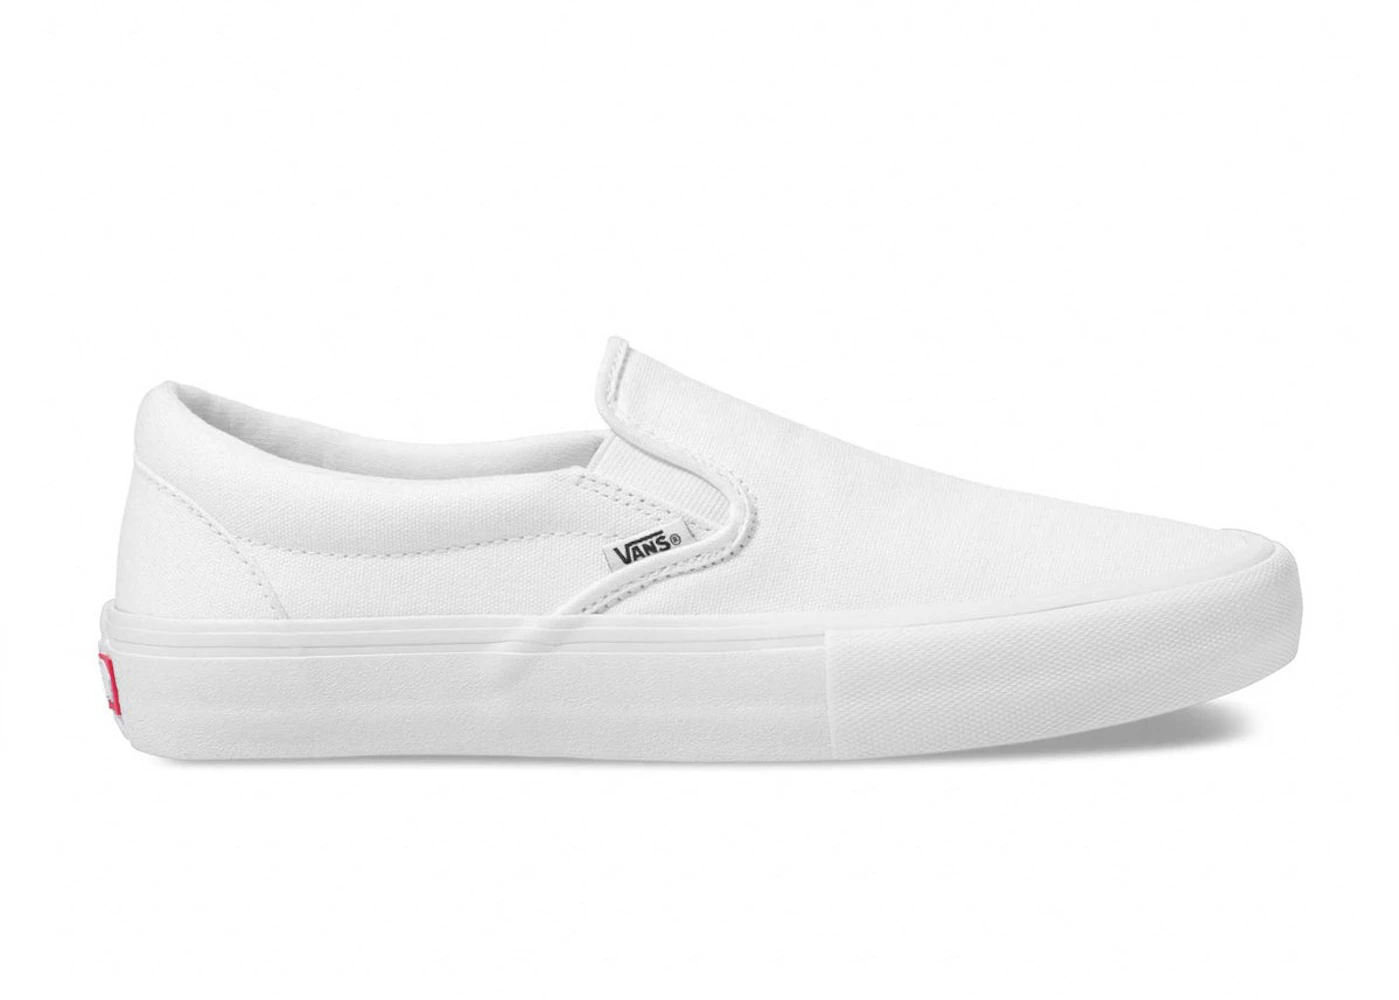 Vans Men's Slip-On Shoes, Size: 13.0, White